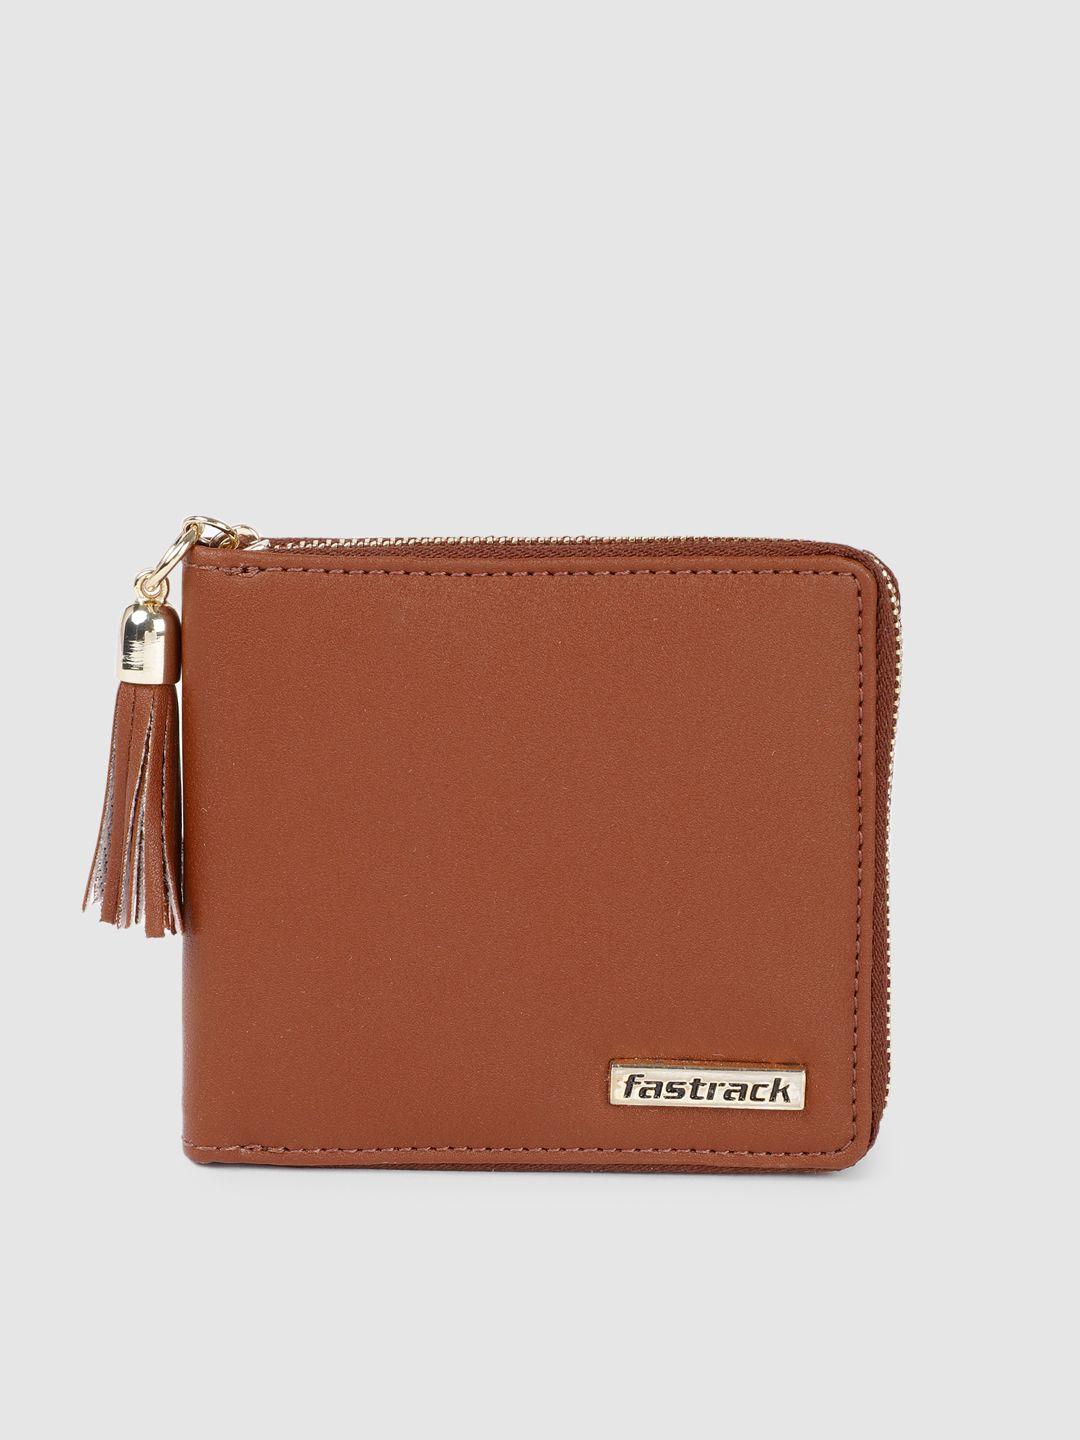 fastrack women solid zip around wallet